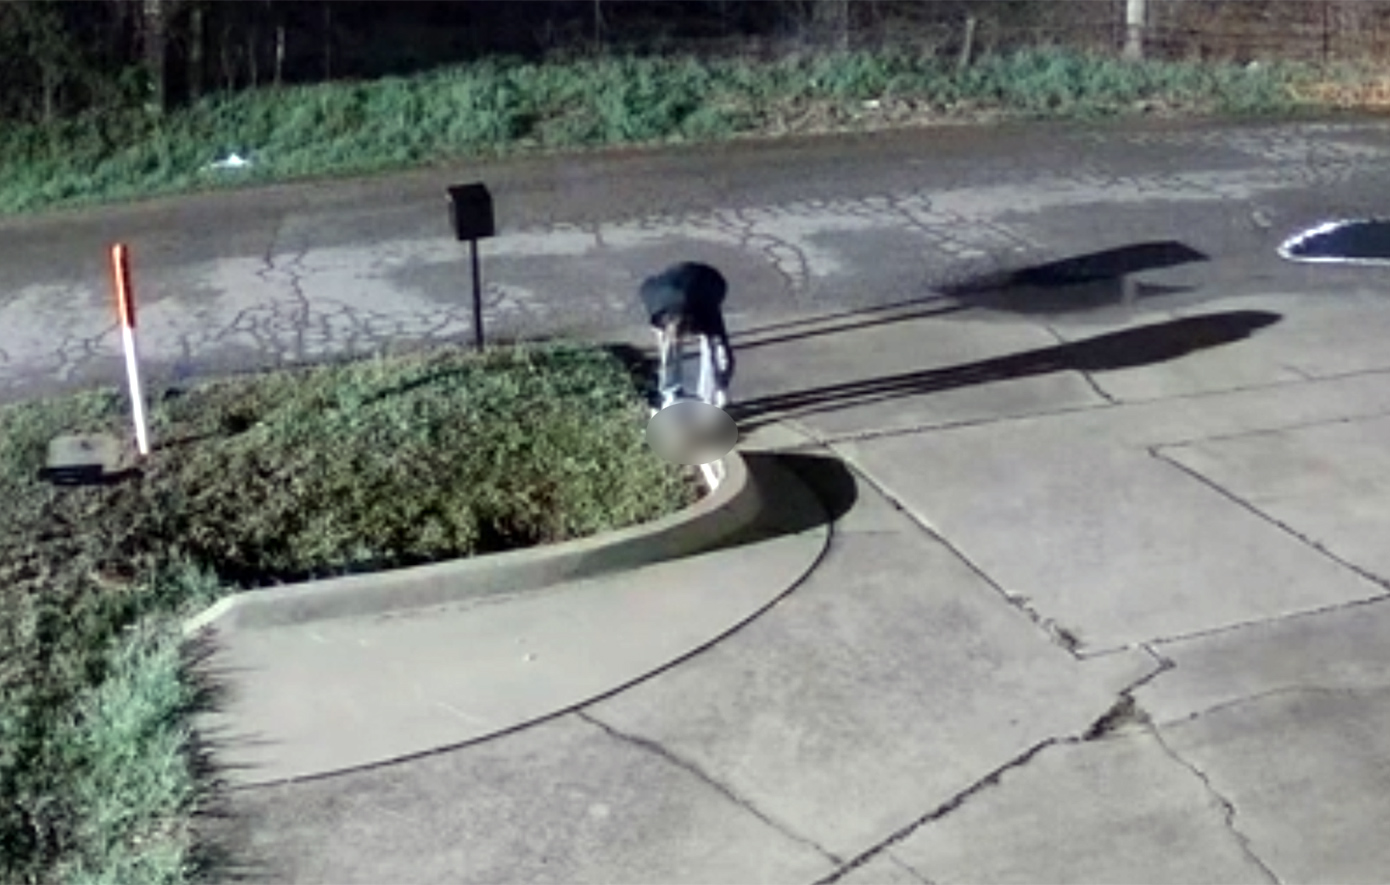 Σκληρές εικόνες με άνδρα που ποδοπατά κουτάβι &#8211; Το φριχτό περιστατικό καταγράφηκε σε βίντεο